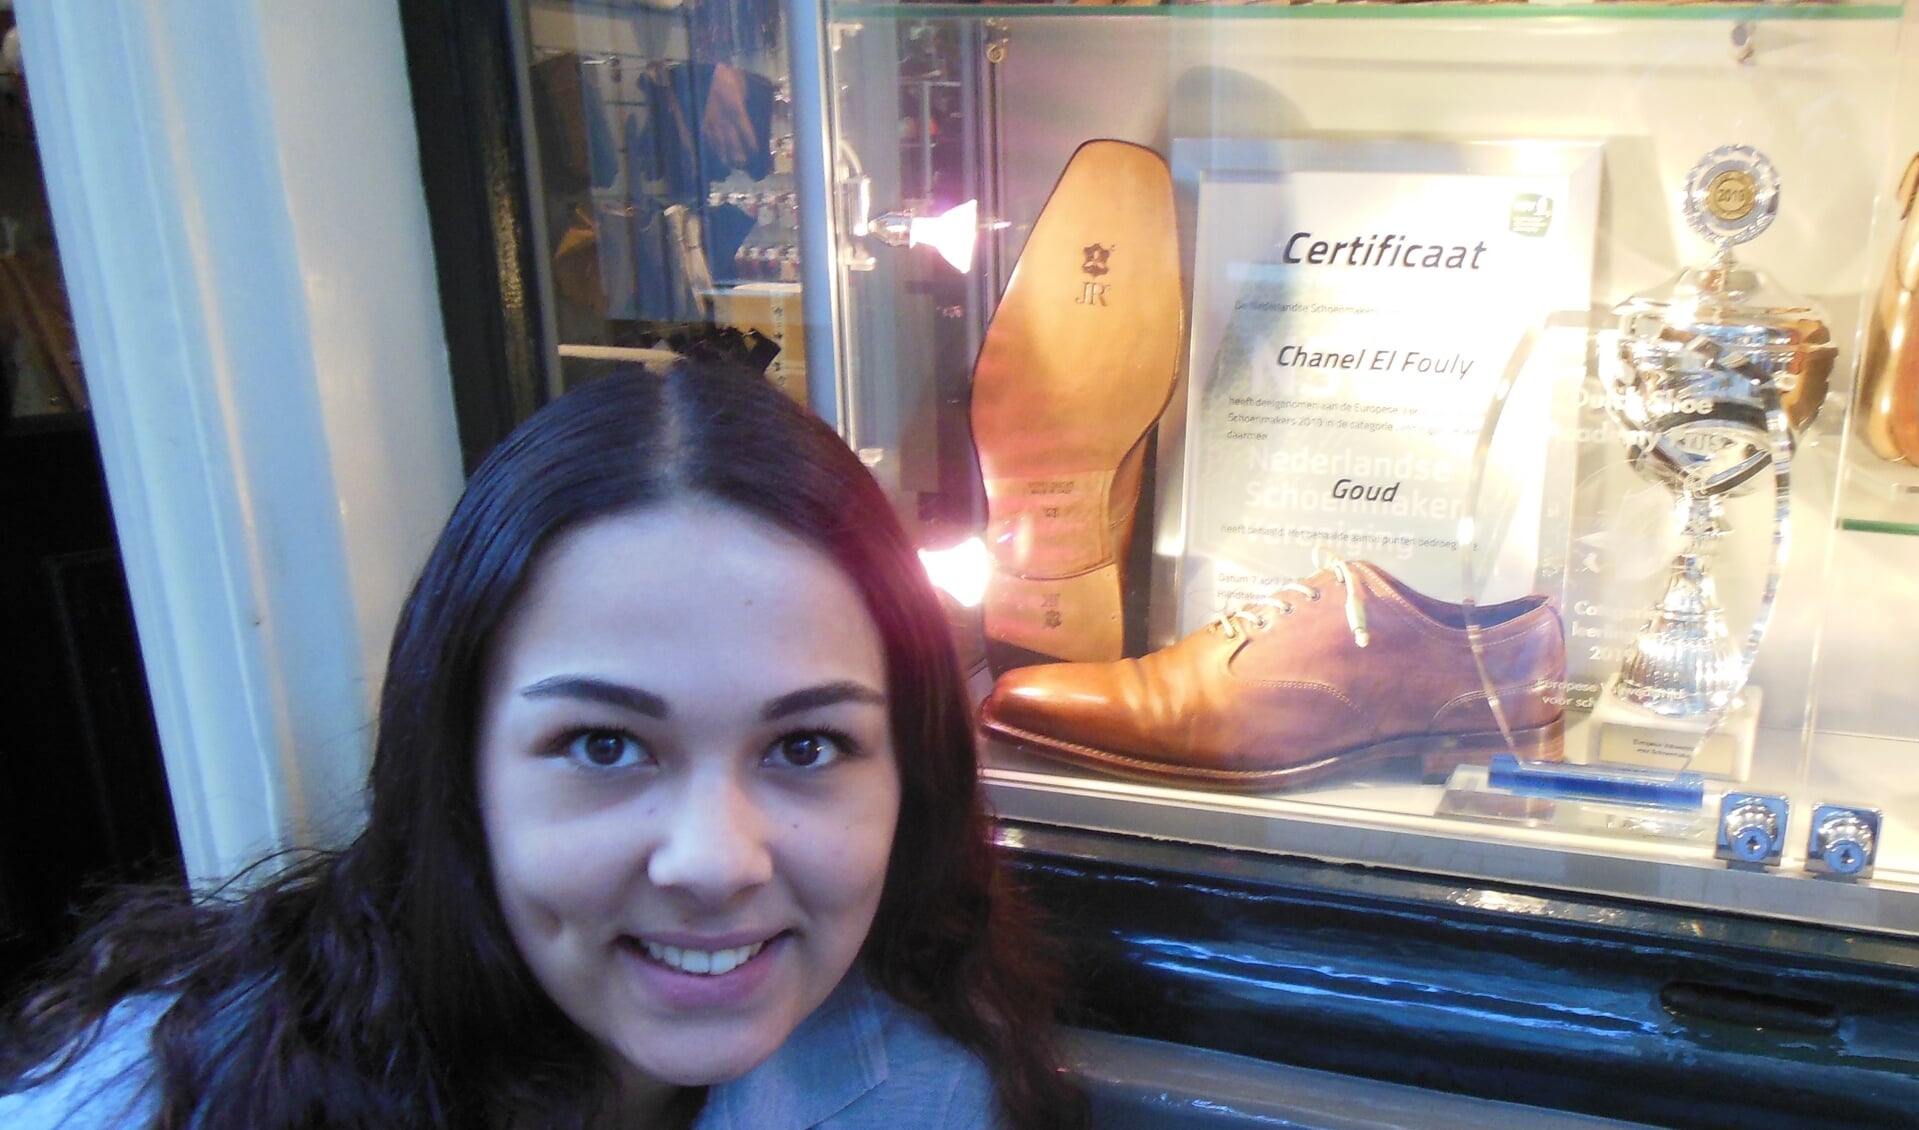 Chanel el Fouly voor de etalage van schoenmakerij ’t Centrum, waarin Mitchel Leijser, sinds 2017 eigenaar, speciale aandacht besteedt aan haar ambachtelijke topprestatie.  Foto: Eric Klop